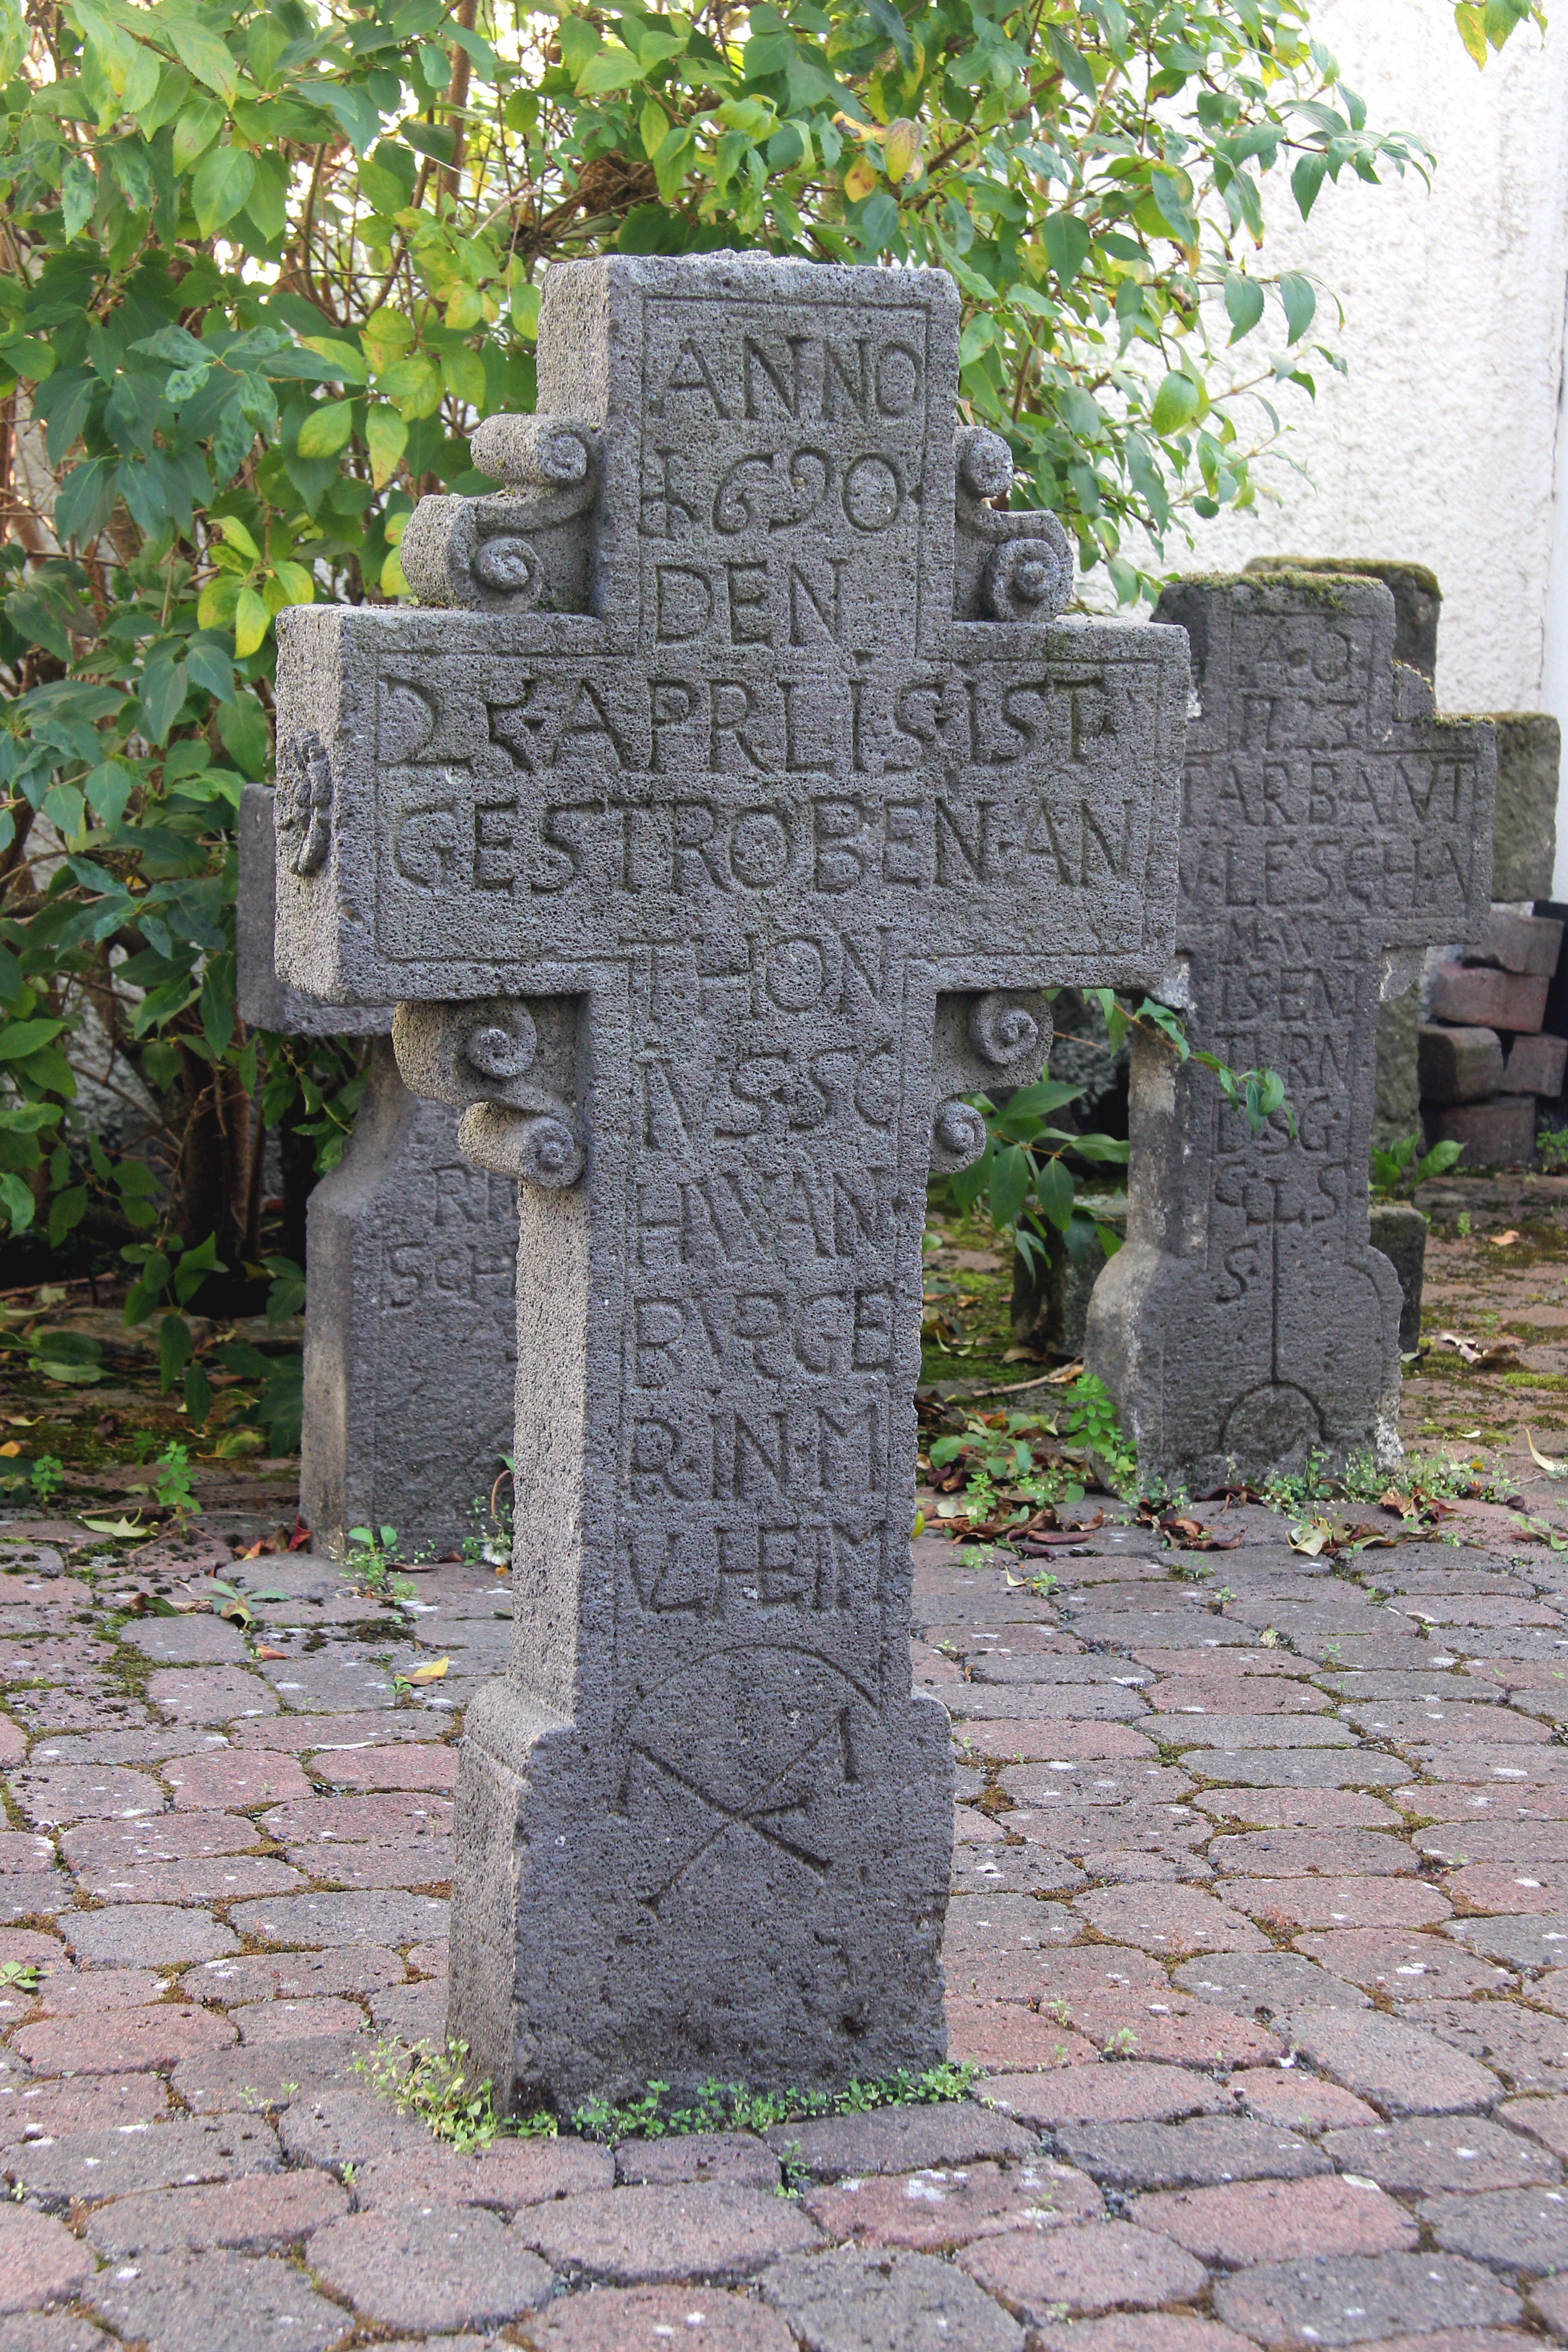 Grabkreuz im Stadtmuseum Mülheim-Kärlich: „Anno 1620 den 25. Aprlis ist gestroben Anthonius Schwan Burger in Mulheim“